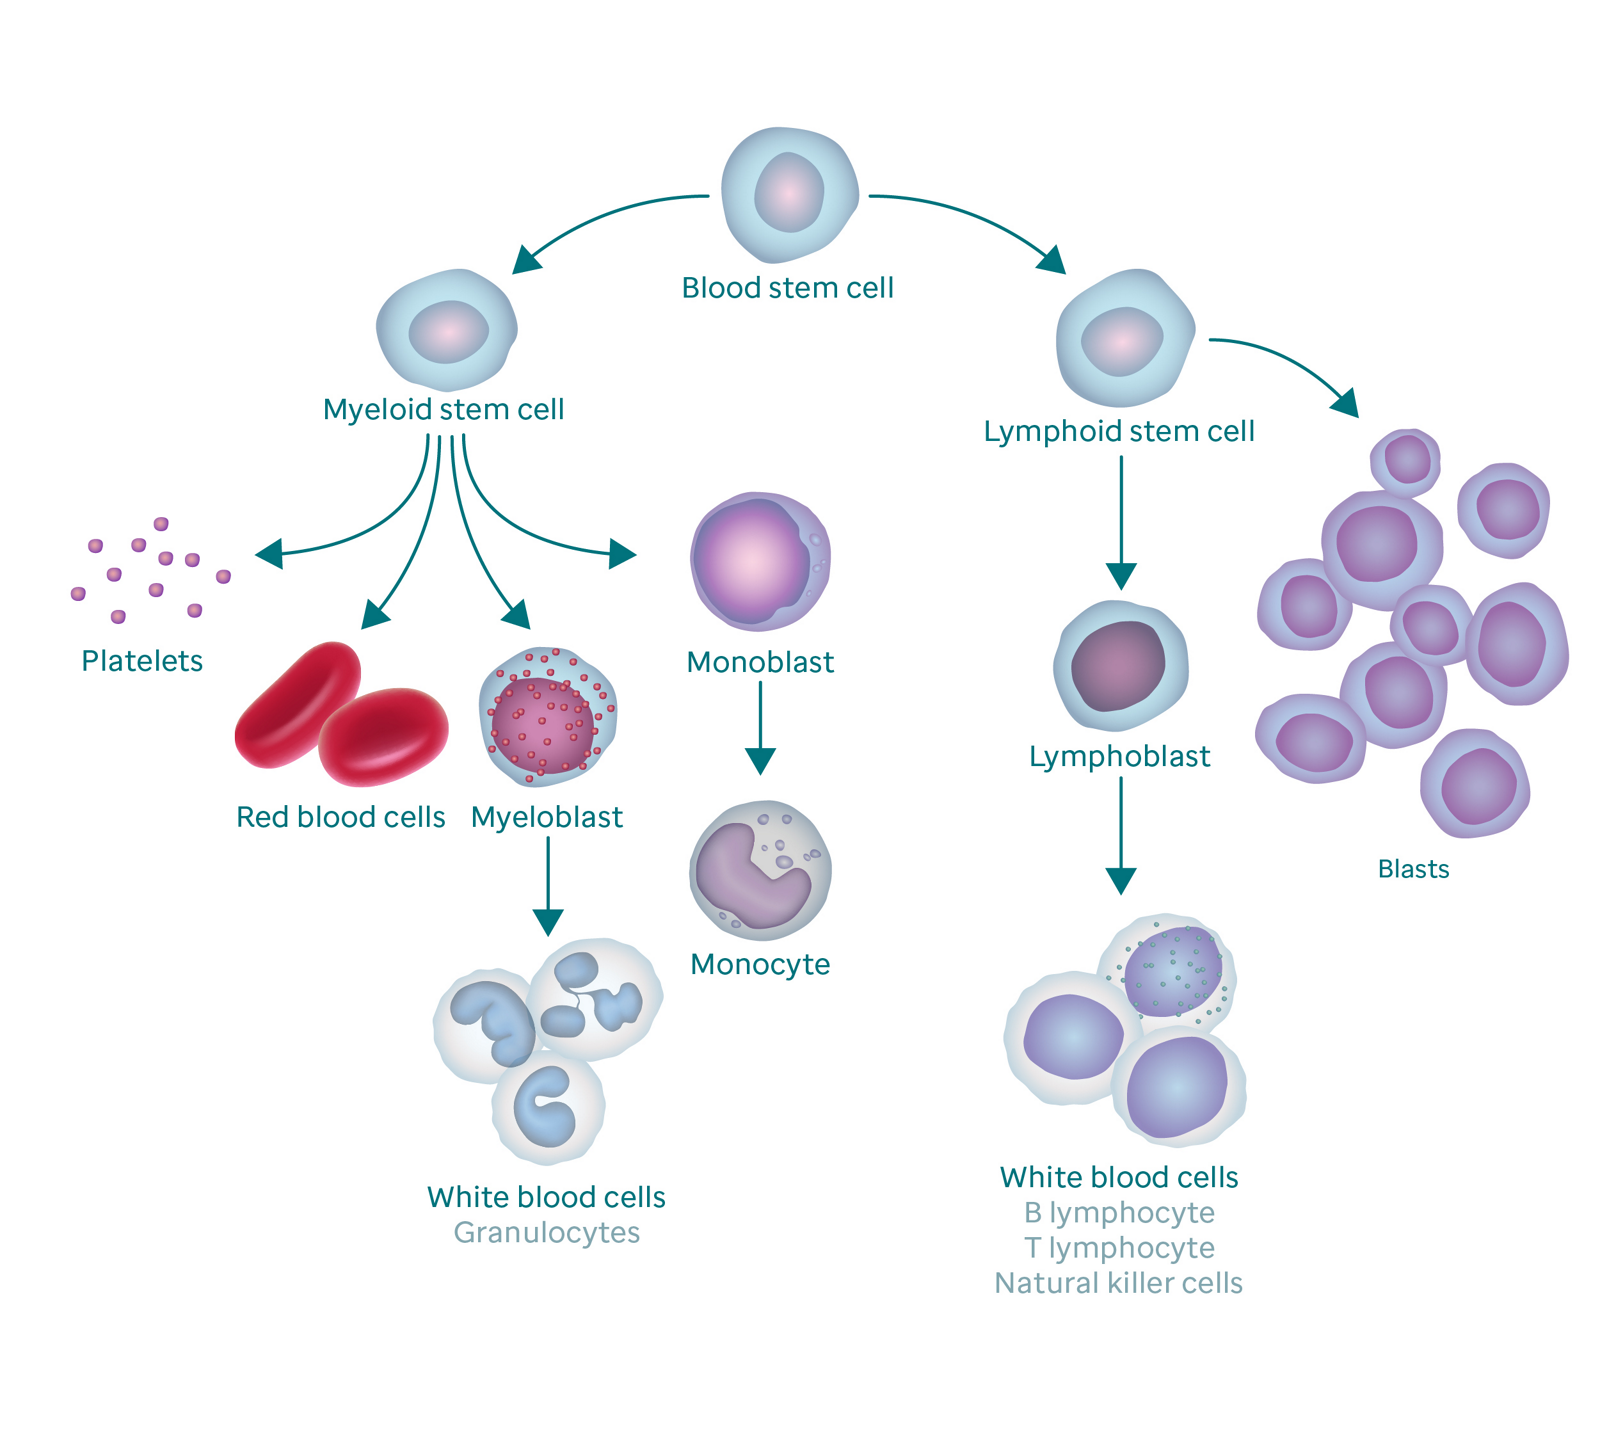 Graphique montrant le processus de formation du sang et comment il se traduit par des cellules blastiques.  Le graphique commence par une cellule souche sanguine.  À gauche, il se ramifie en cellule souche myéloïde, qui se ramifie en plaquettes, globules rouges, myéloblastes et monoblastes.  Le myéloblaste se transforme en globules blancs (également appelés granulocytes) et le monoblaste se transforme en monocyte.  La branche droite des cellules souches sanguines va aux cellules souches lymphoïdes, qui se ramifient en lymphoblastes (qui se transforment en globules blancs) et en cellules blastiques.